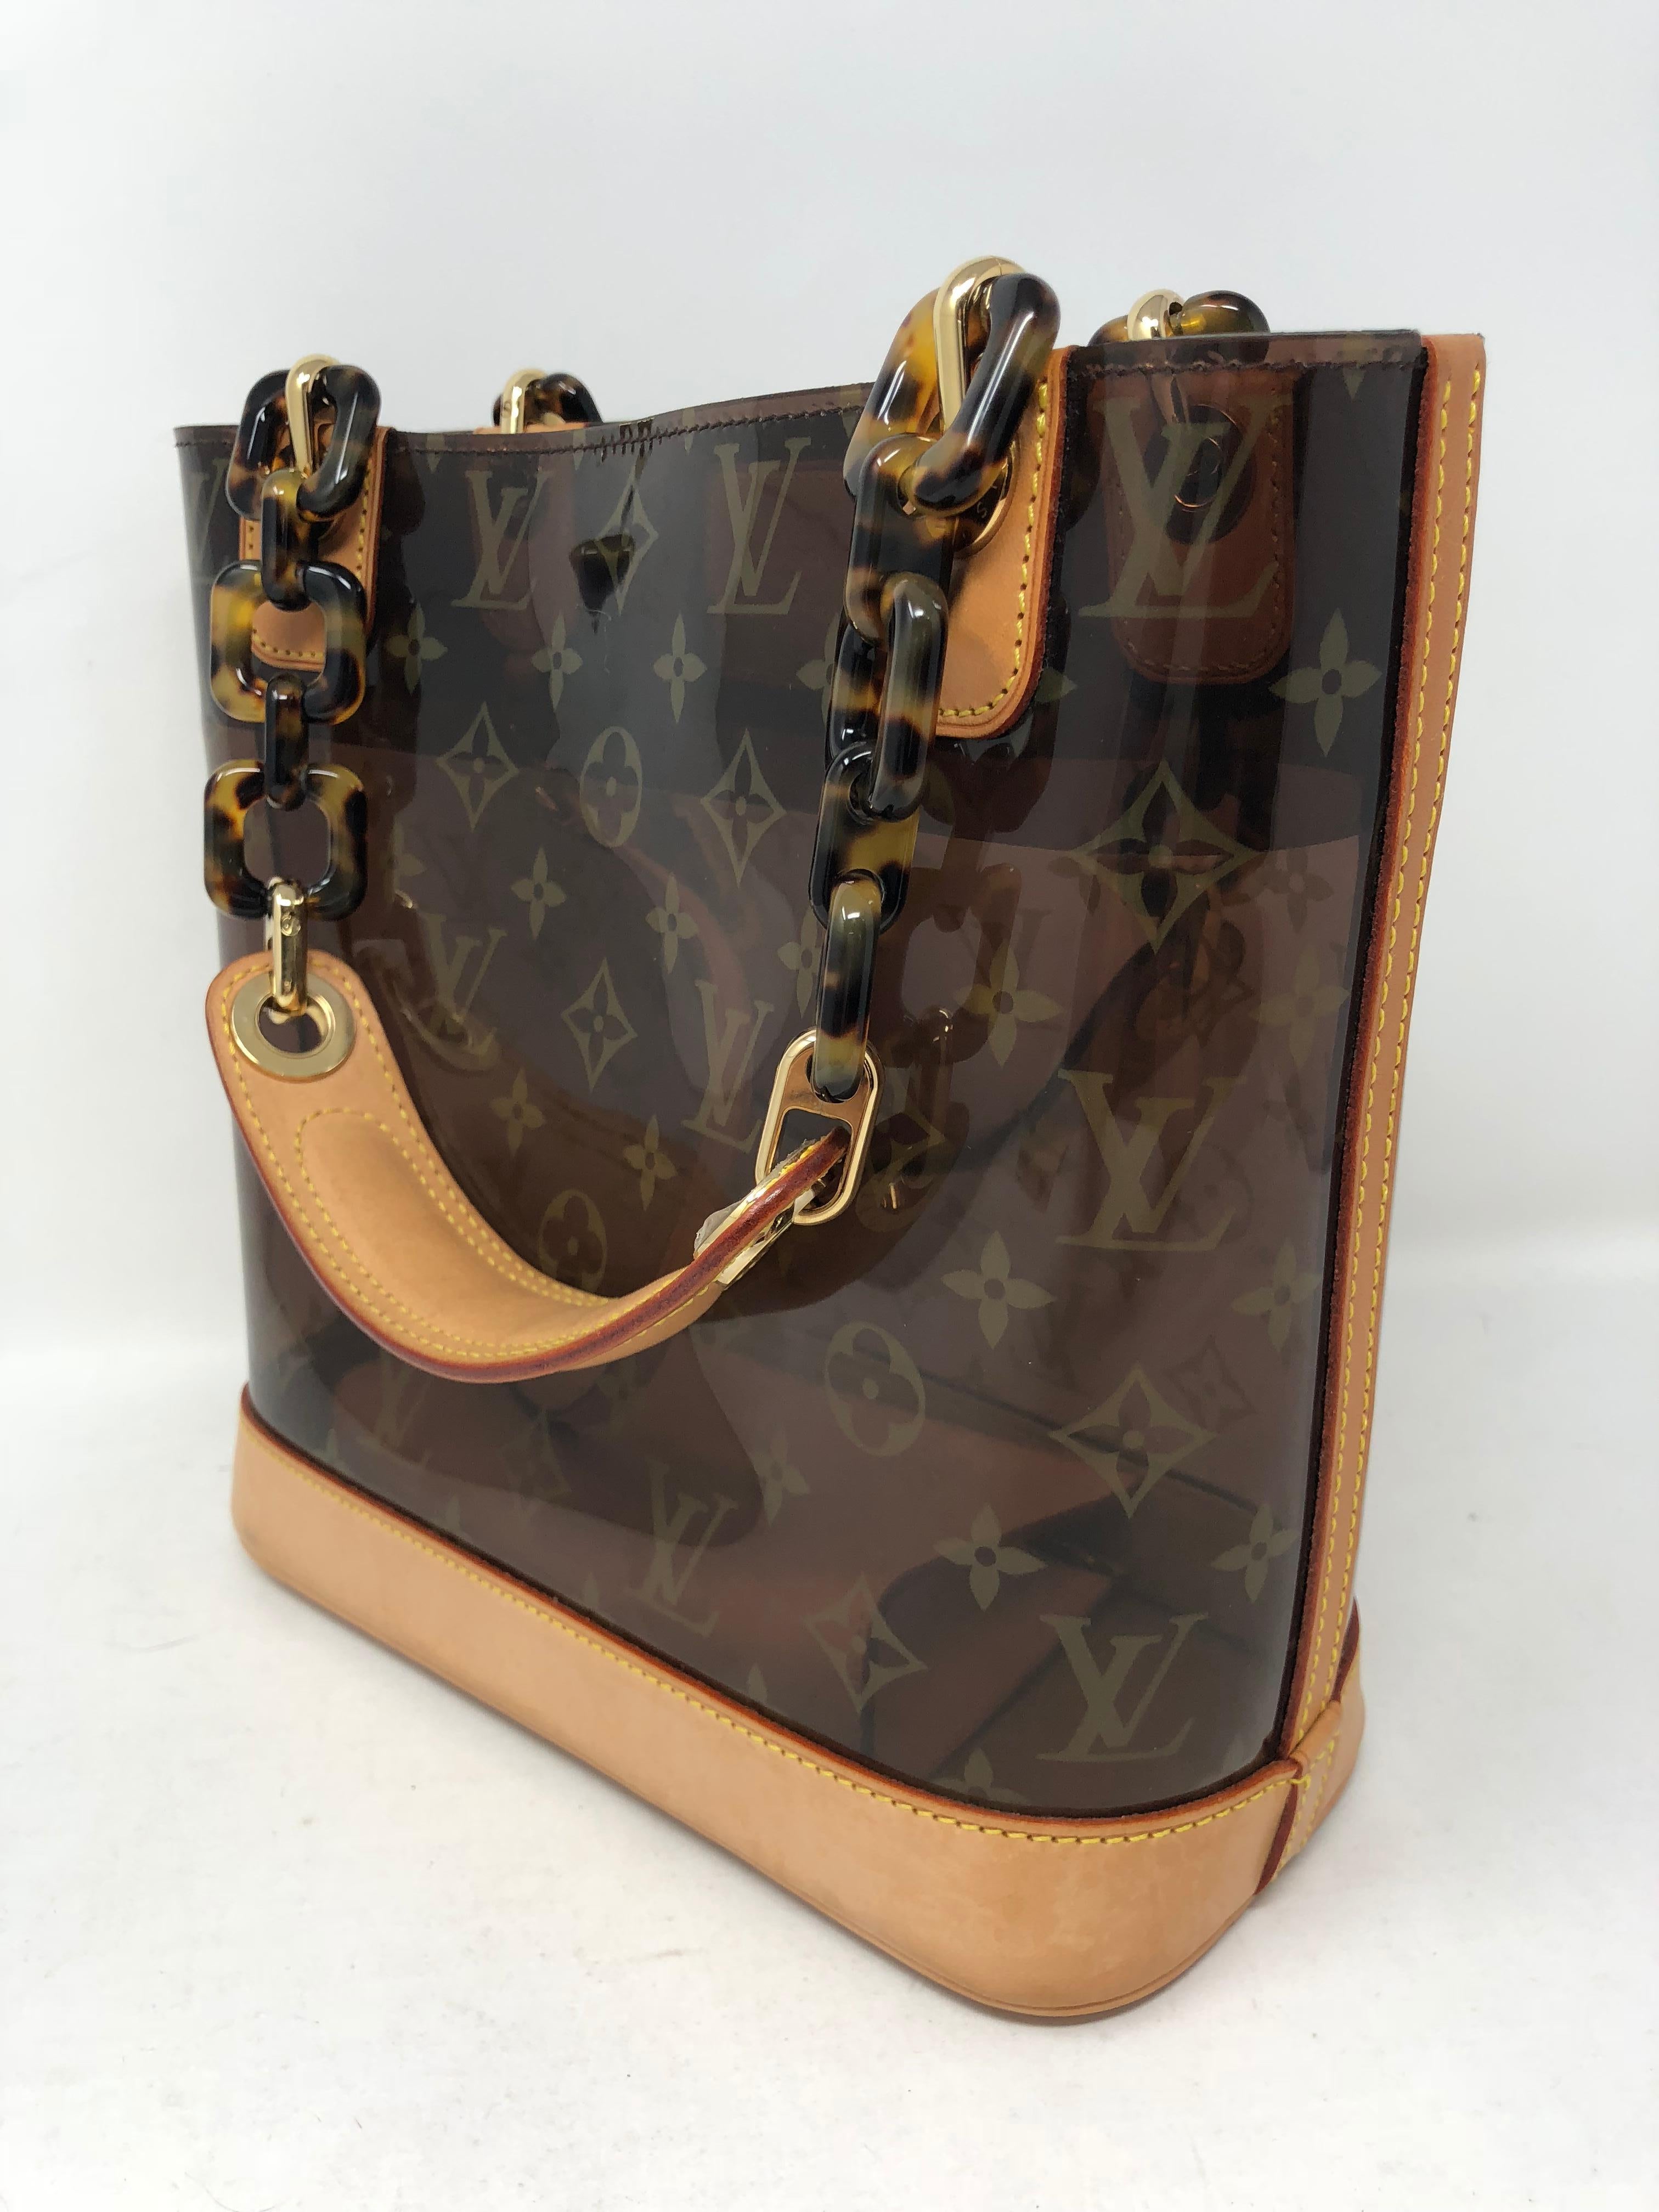 Black Louis Vuitton Cabas Ambre PM Bag